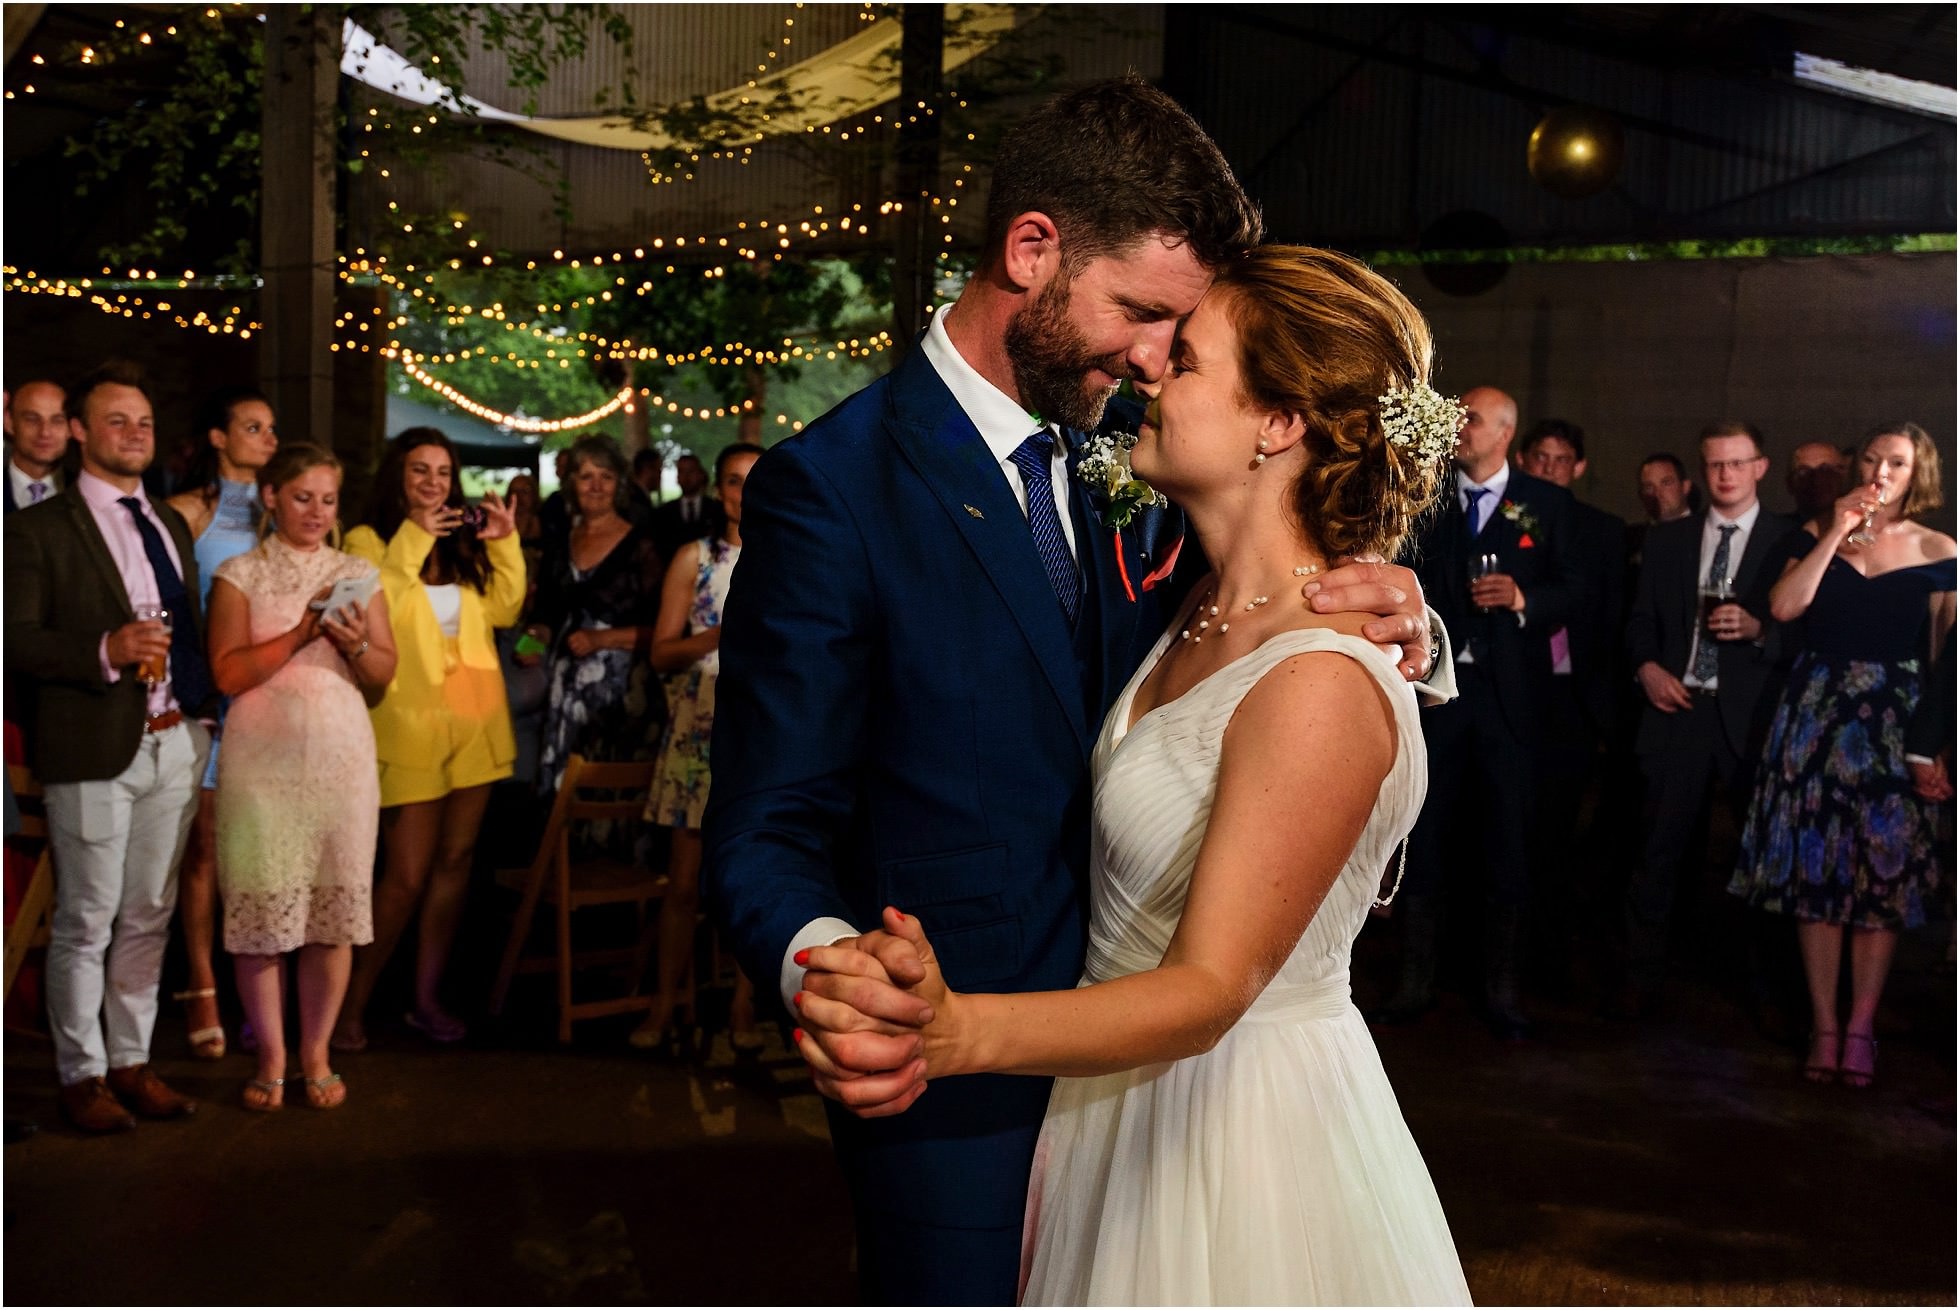 Best Norfolk Wedding Photos of 2018